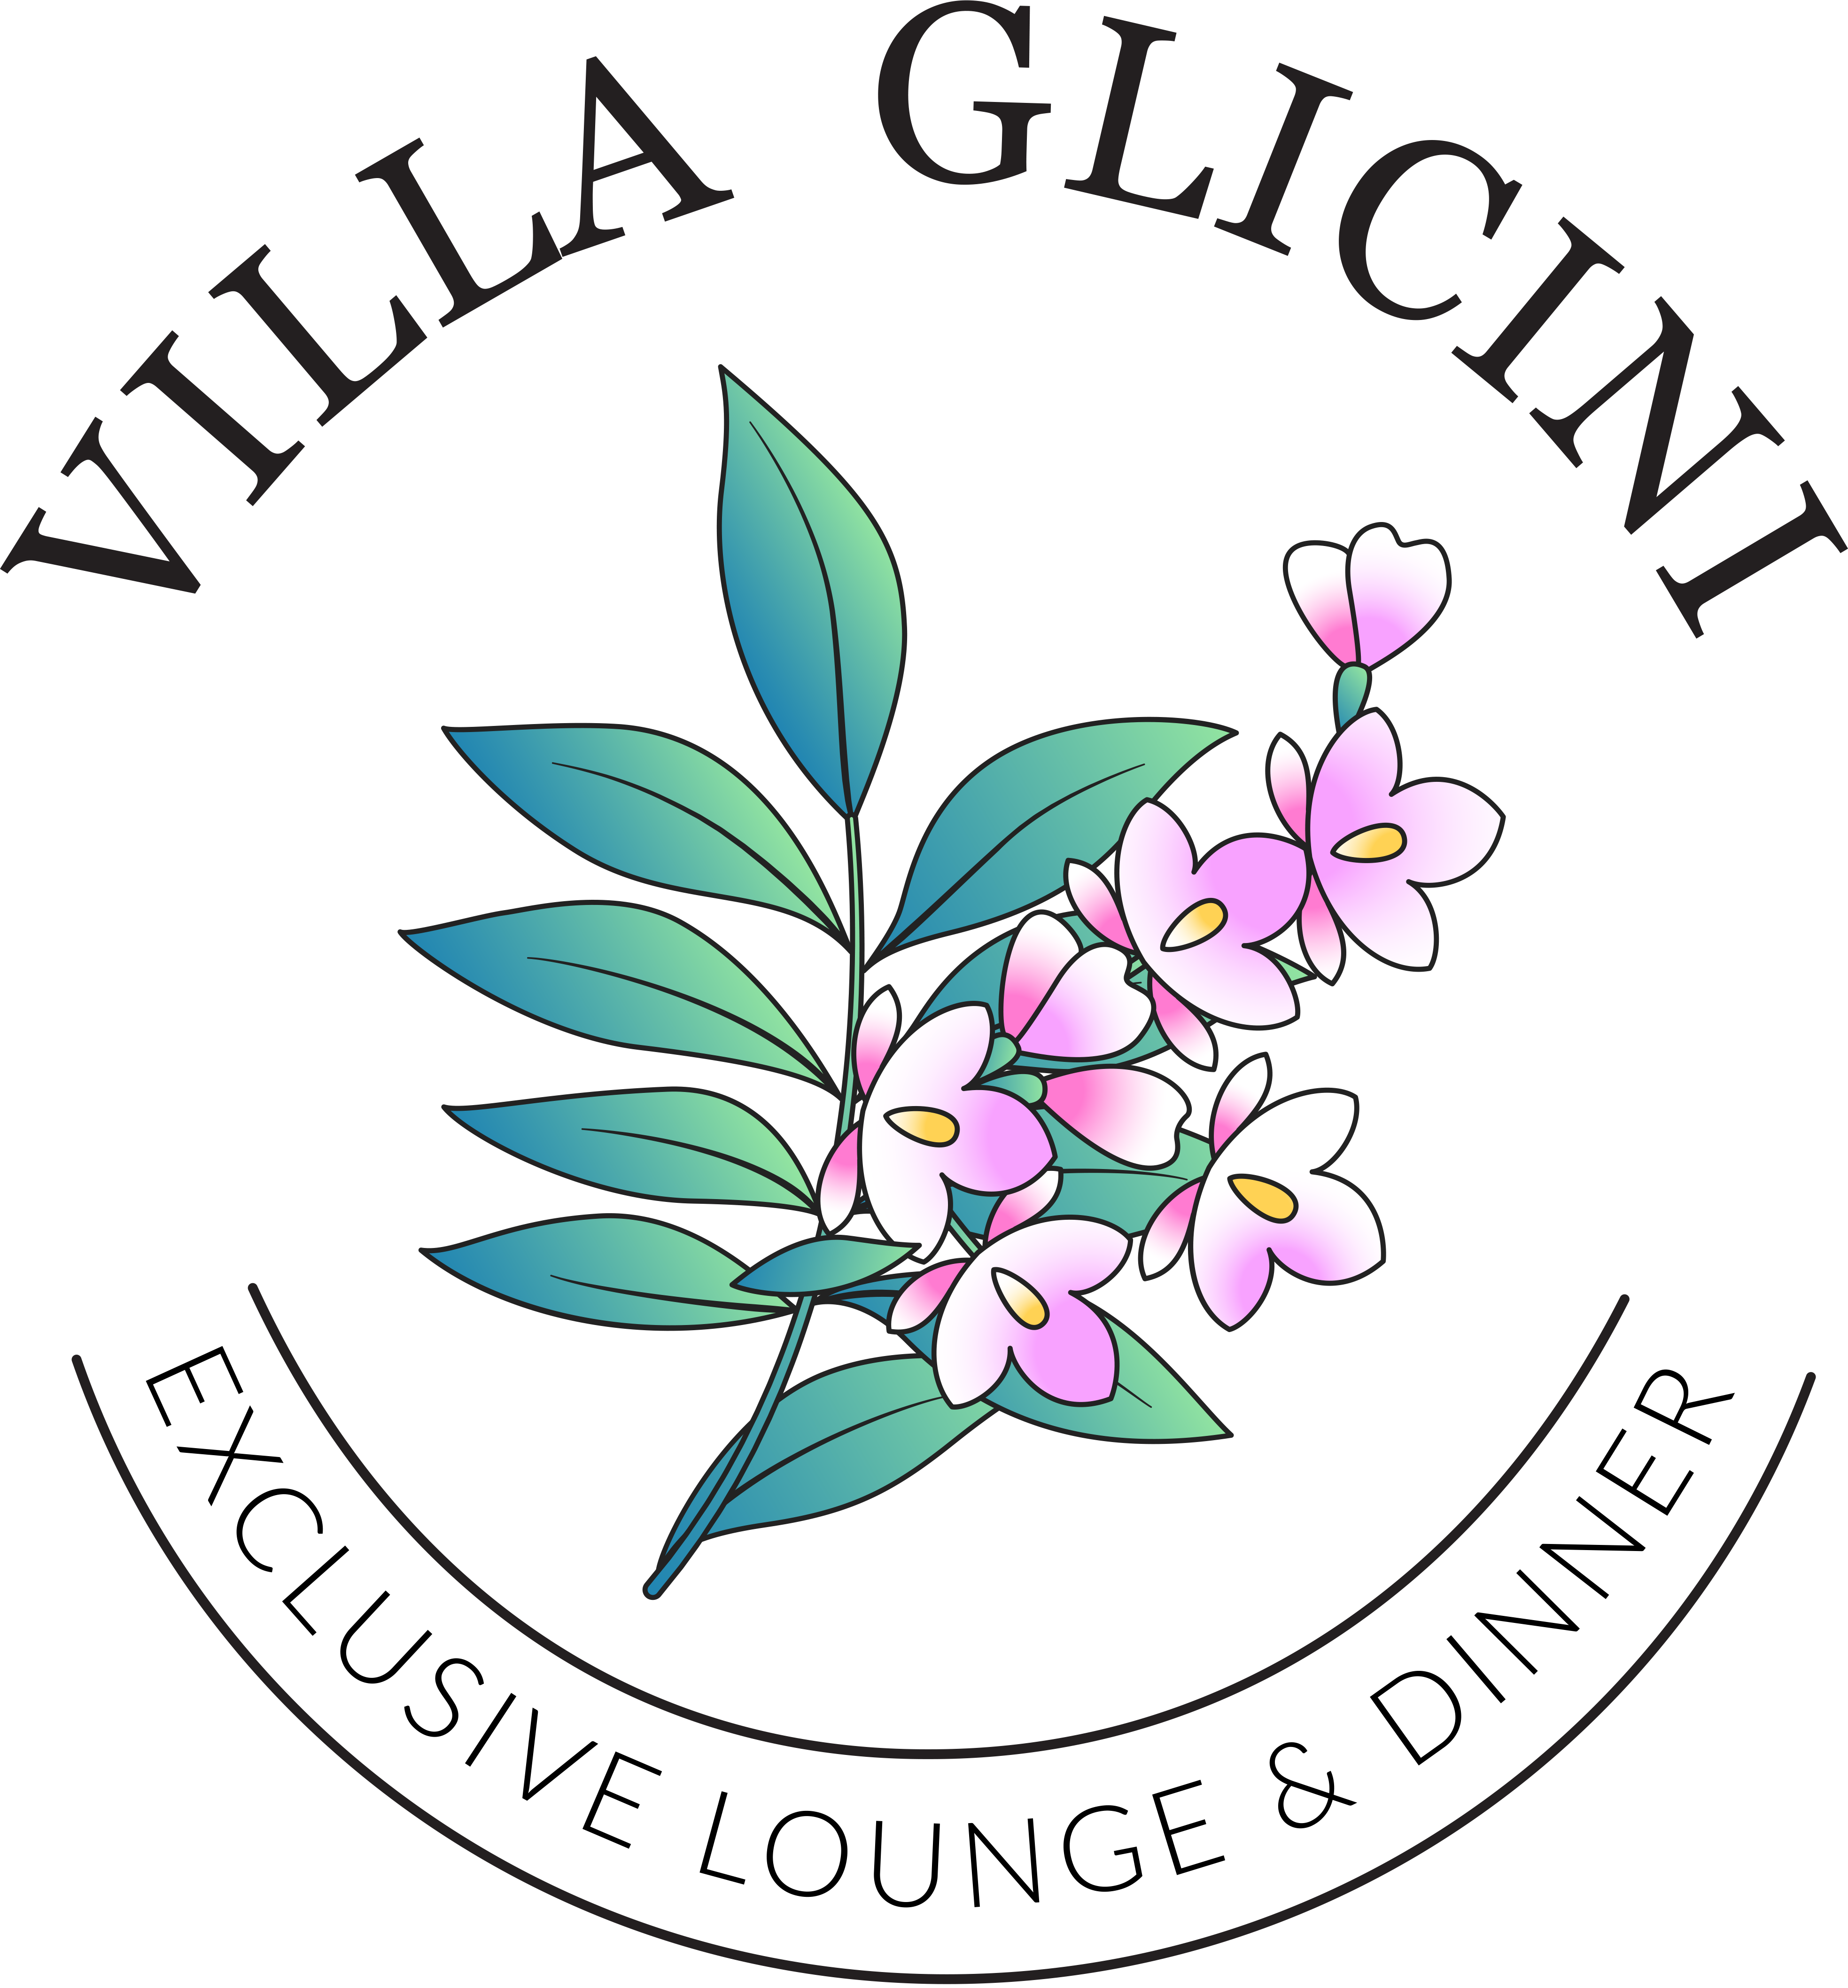 Villa Glicini